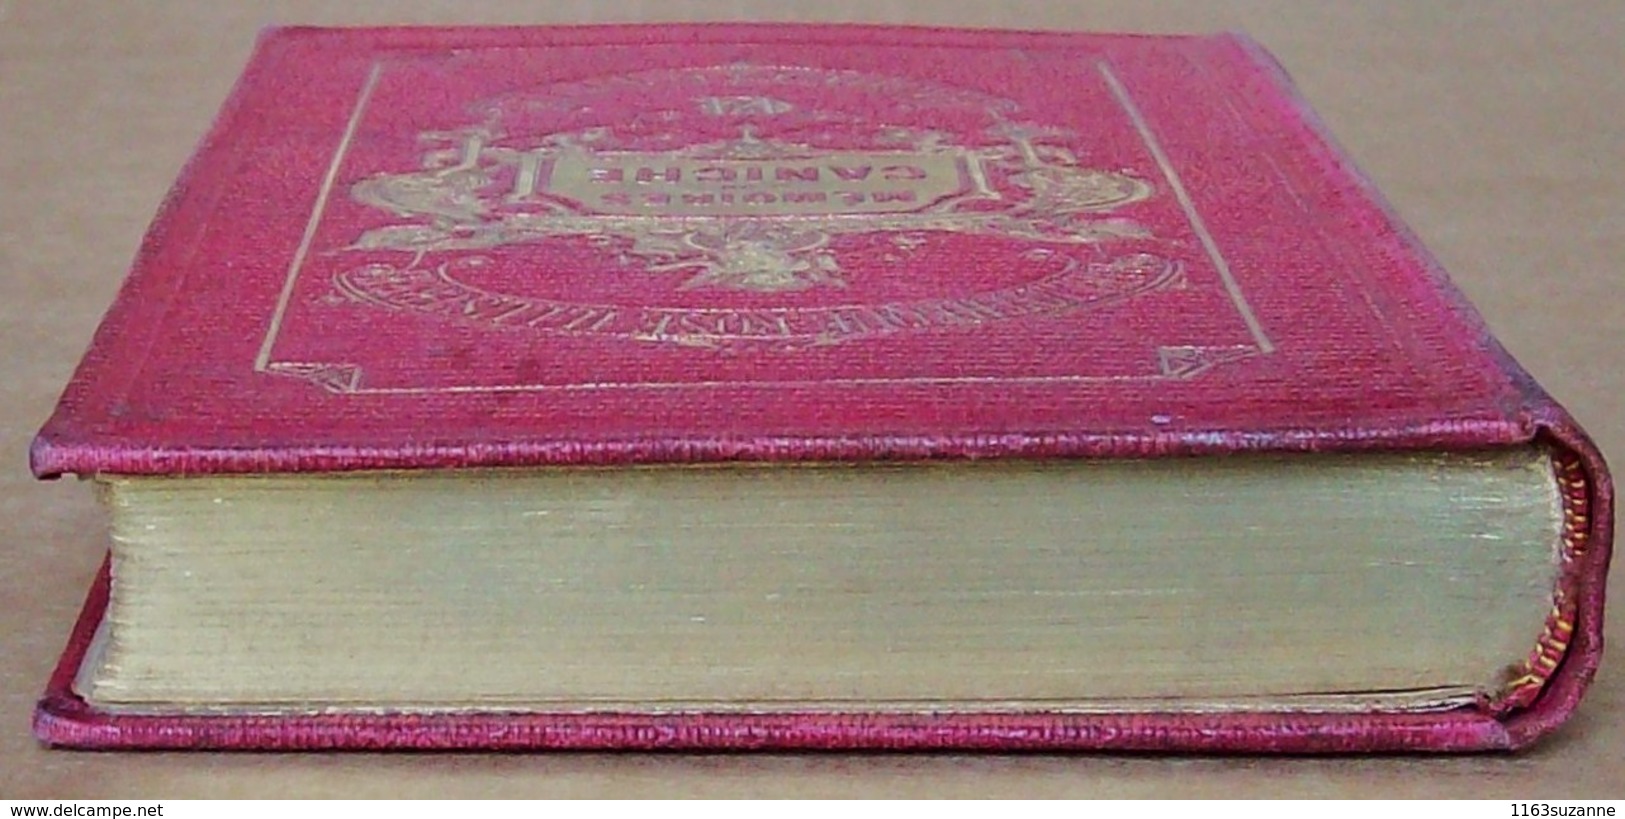 Hachette, 1905 > Mlle JULIE GOURAUD : Mémoires d'un caniche, illustré par EMILE BAYARD (Bibliothèque Rose Illustrée)